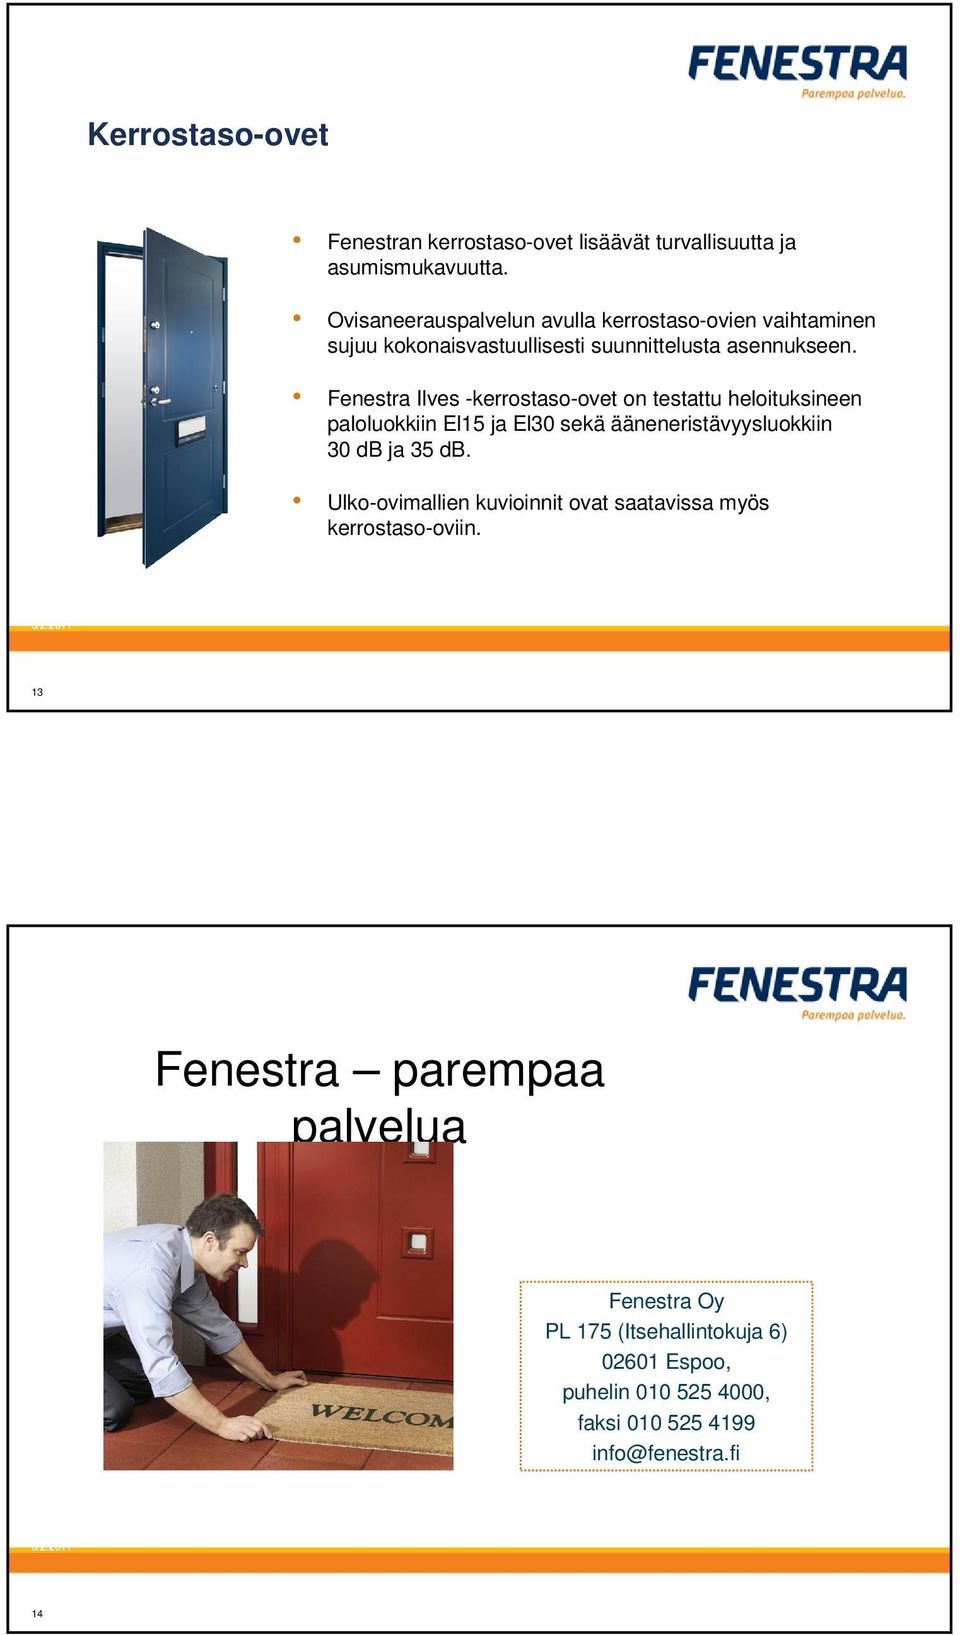 Fenestra Ilves -kerrostaso-ovet on testattu heloituksineen paloluokkiin El15 ja El30 sekä ääneneristävyysluokkiin 30 db ja 35 db.